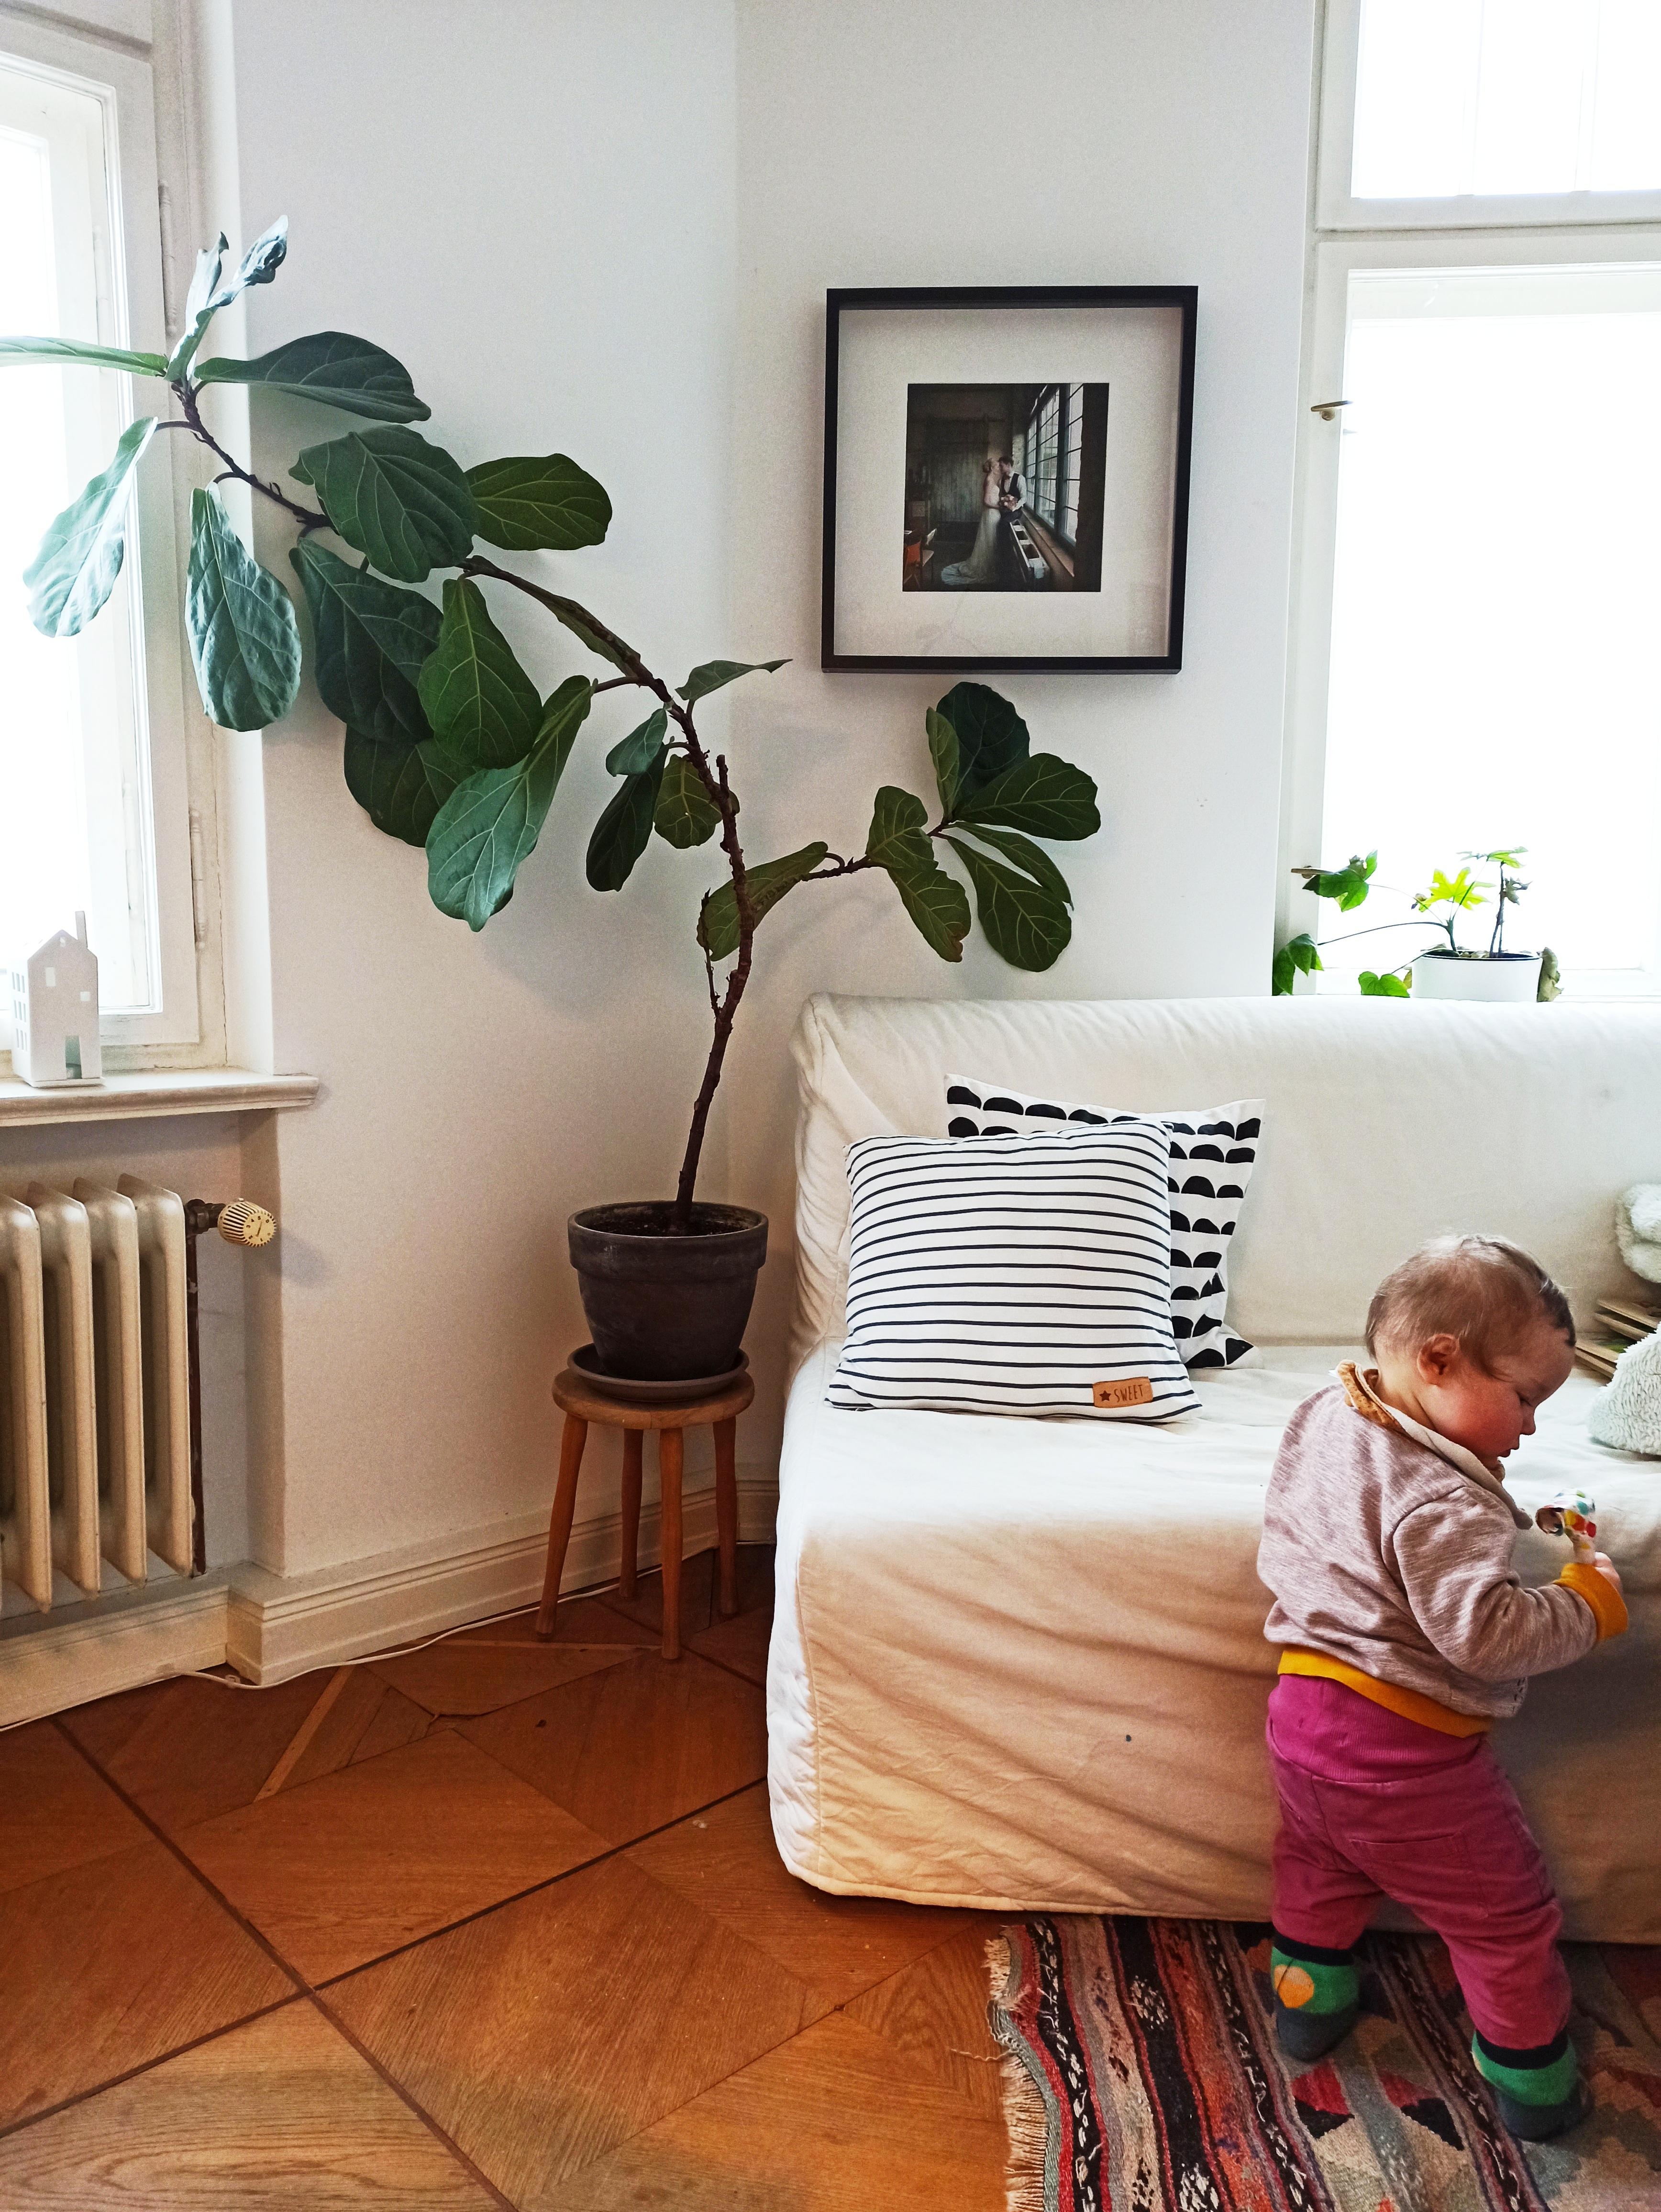 Topf mit Blumenerde + neugieriges Baby = interessante Kombination... #esszimmer #wohnzimmer #couch #pflanze